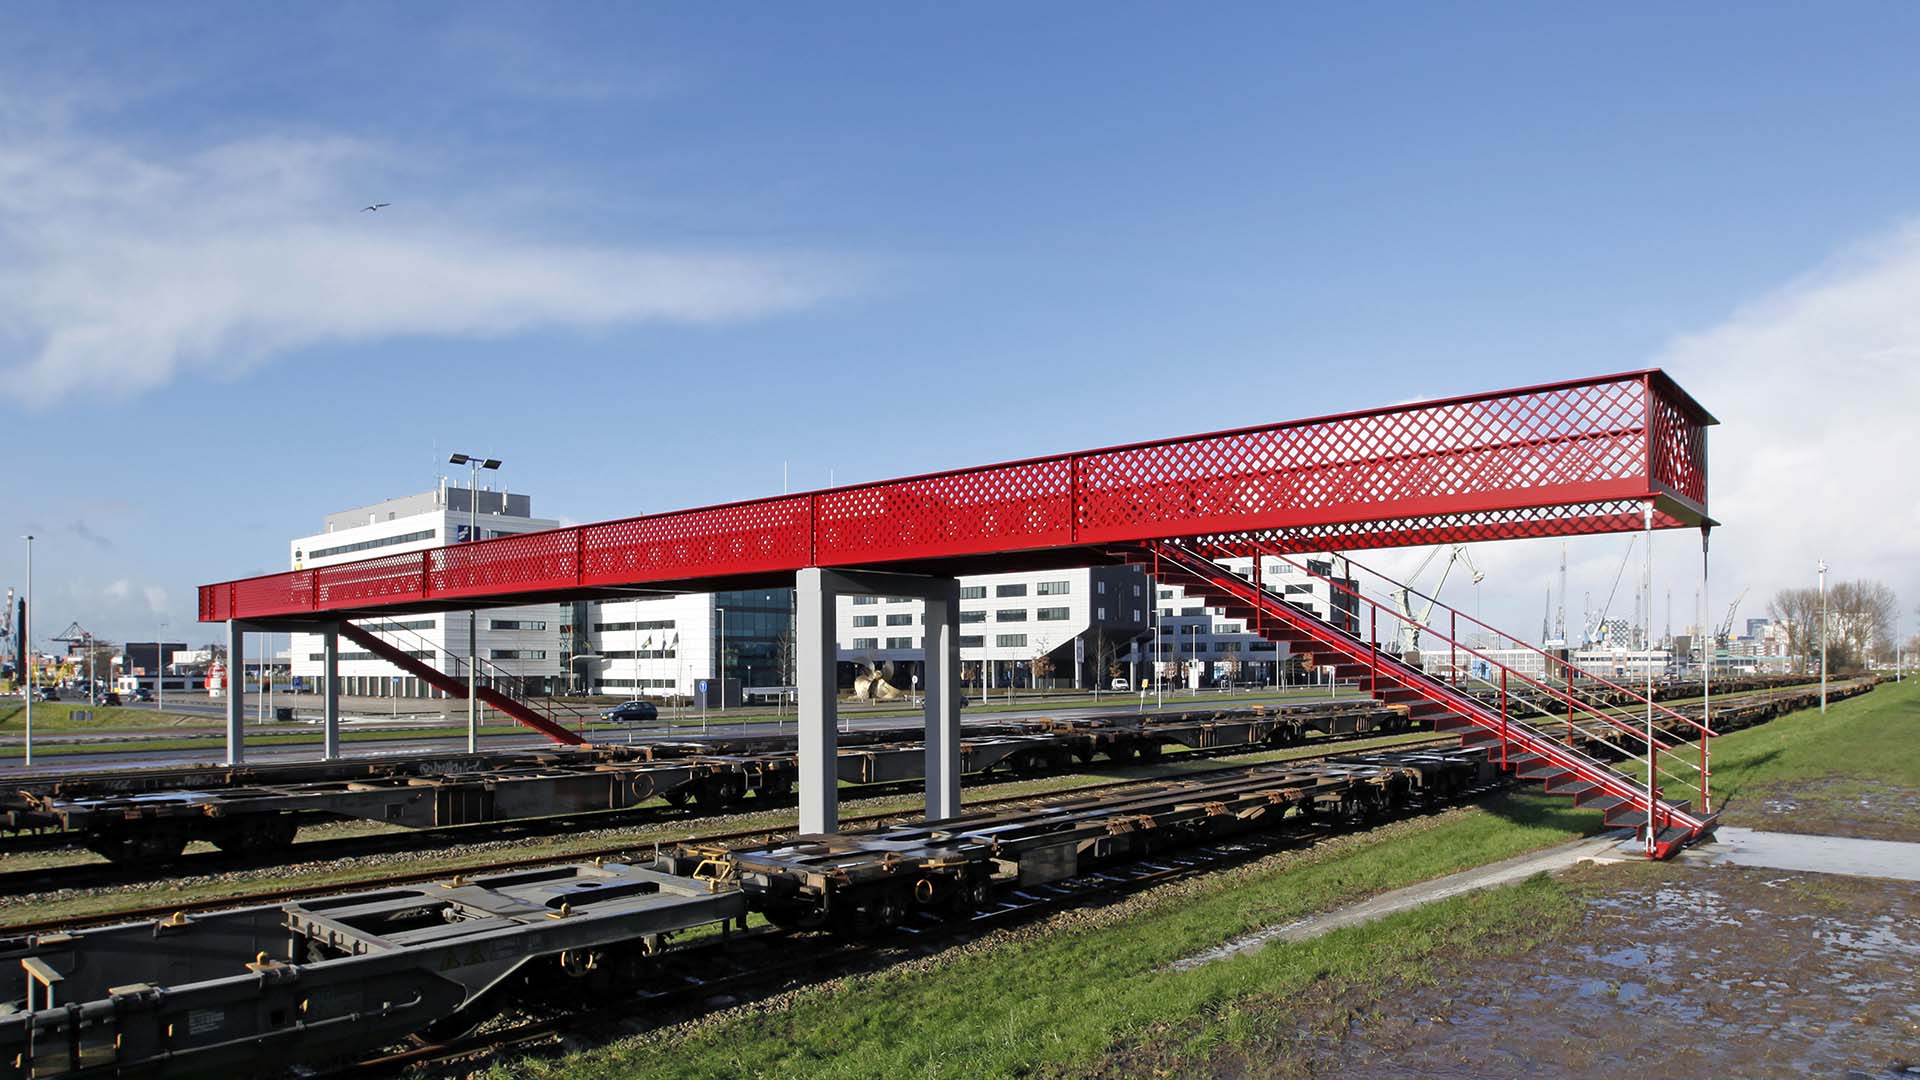 rode brug waalhaven, voetgangersbrug over het spoor, uniek strak ontwerp